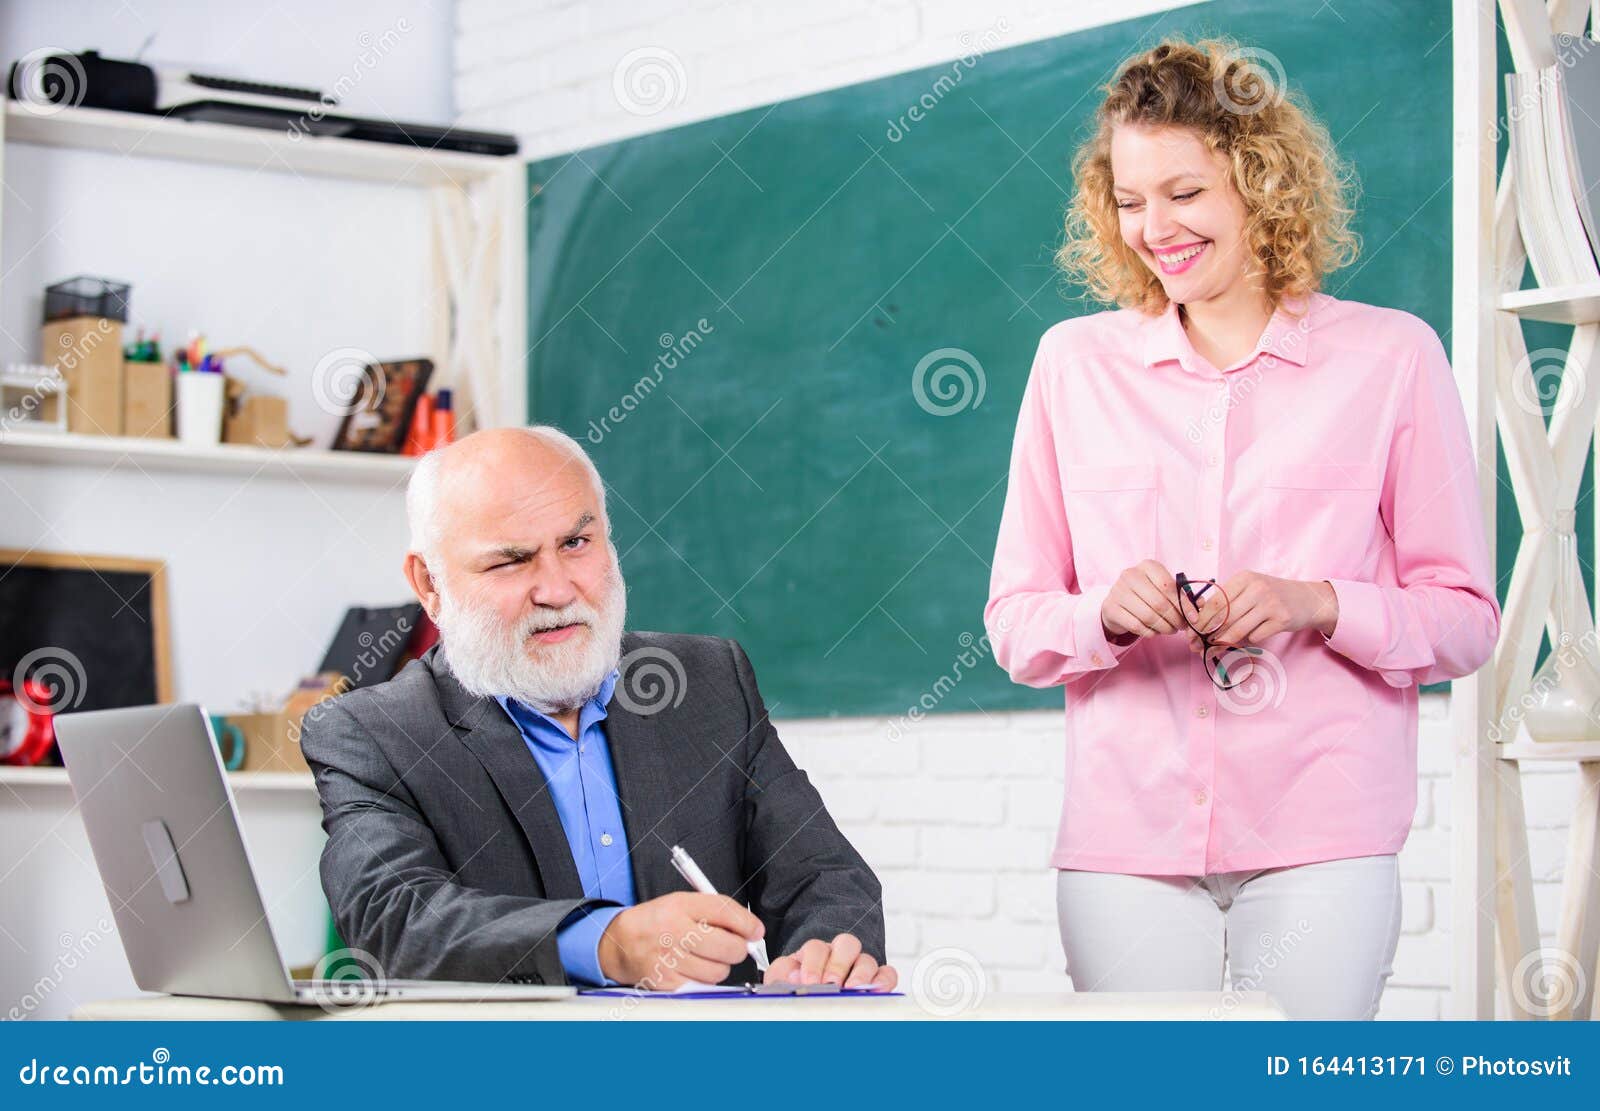 Teacher helps student pass